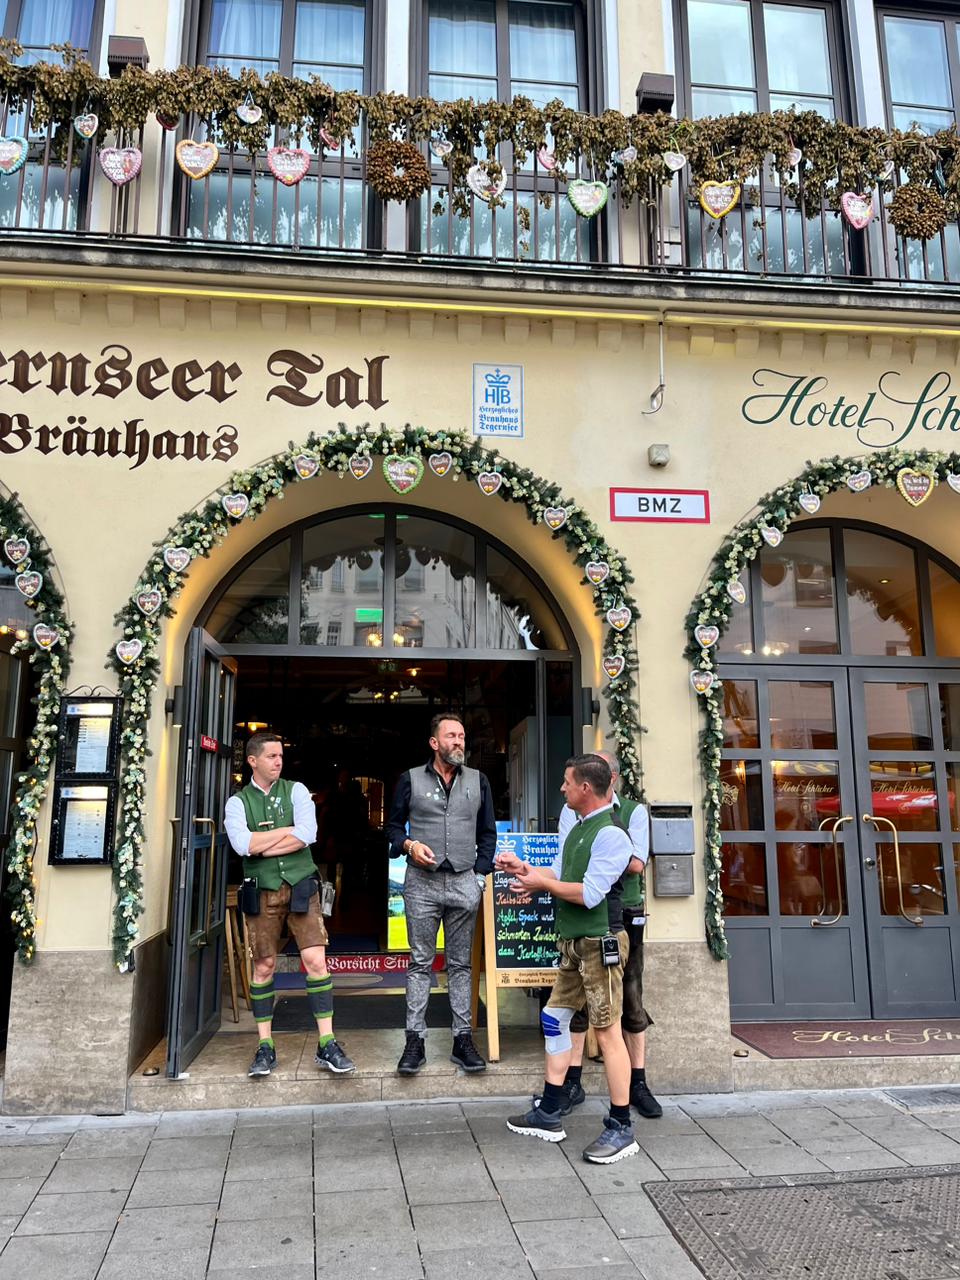 Каково это – посетить Октоберфест и отведать «самое немецкое» в мире пиво